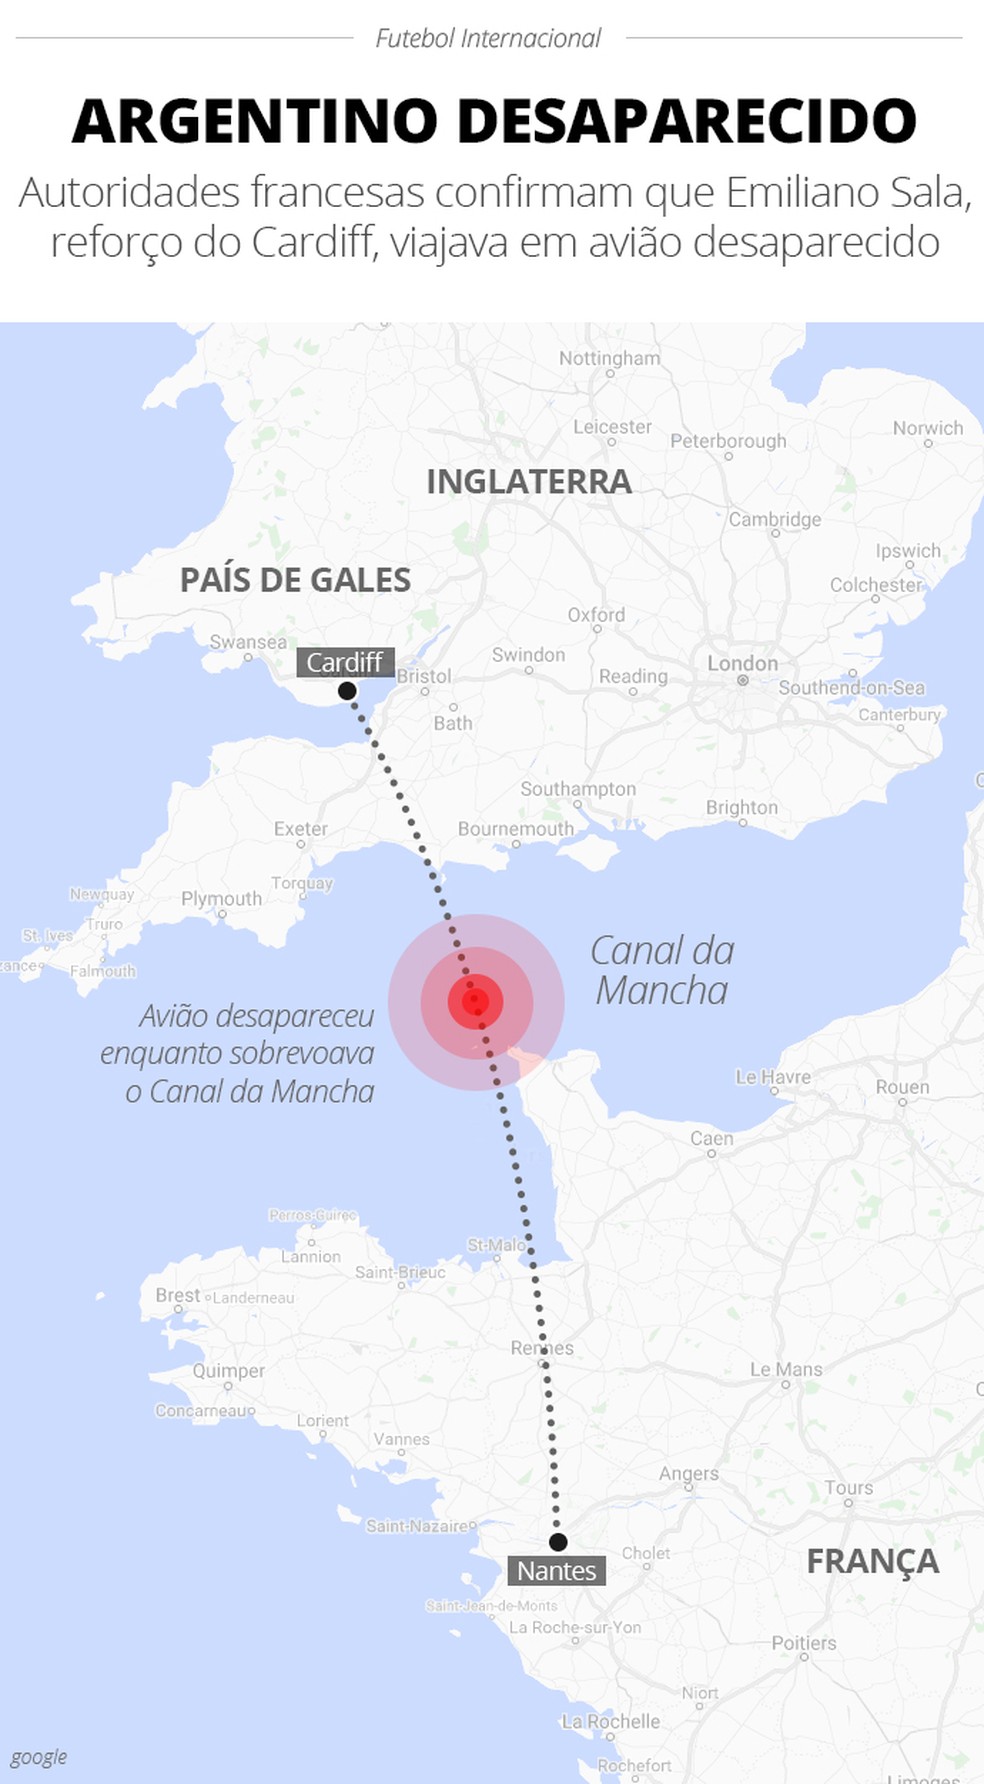 Percurso do avião que levaria Sala ao País de Gales  — Foto: infoesporte